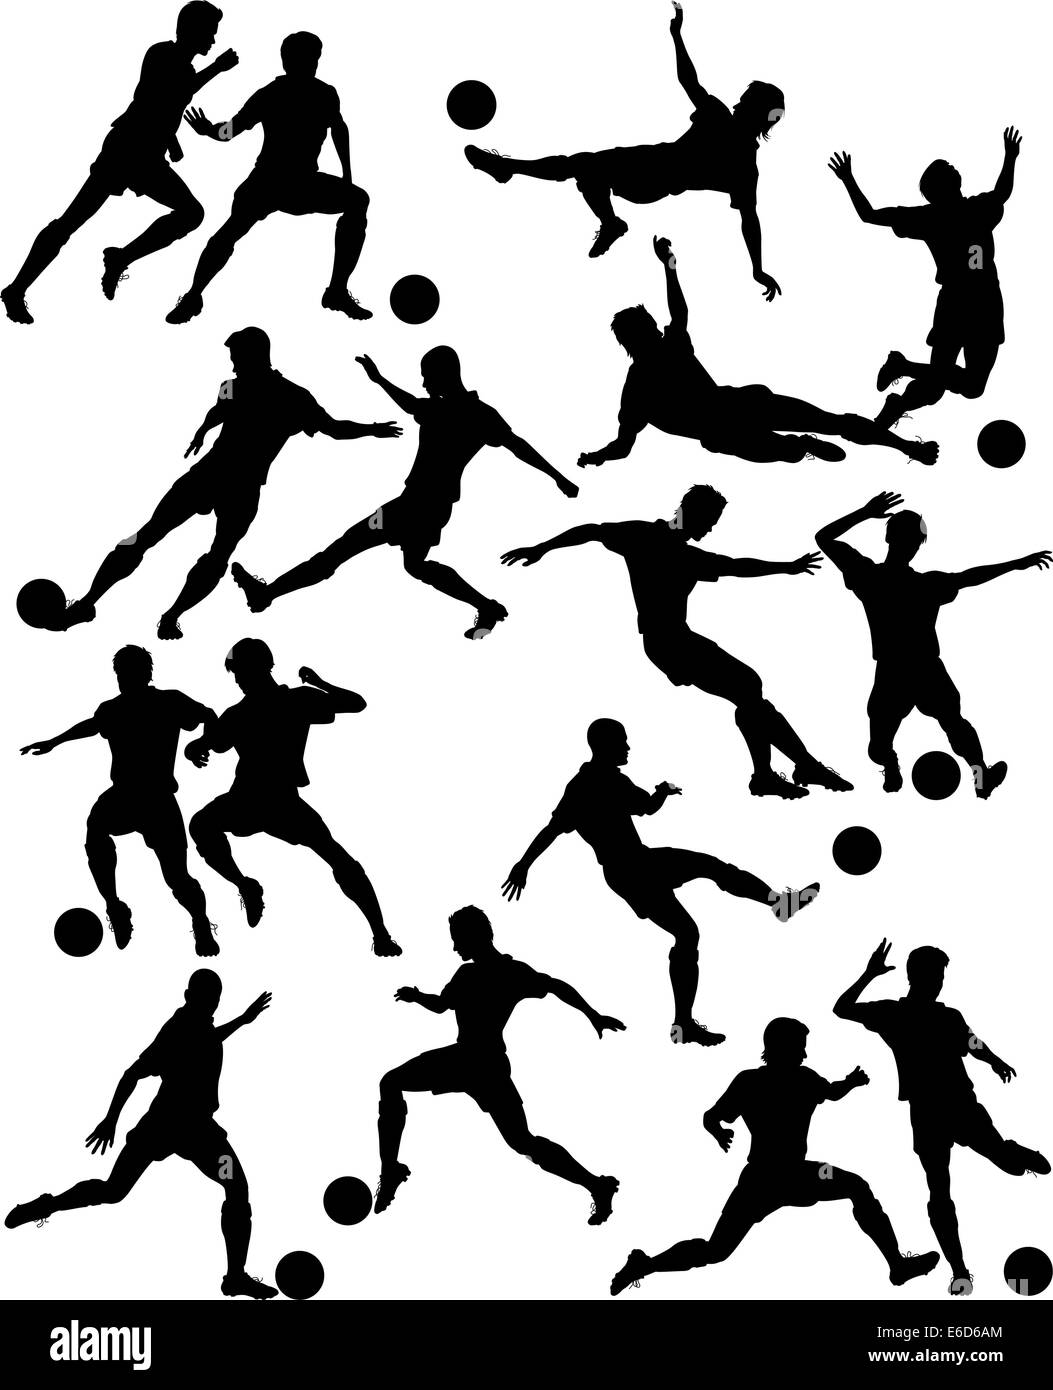 Ensemble de vecteurs modifiables silhouettes d'hommes jouer au football avec tous les chiffres en tant qu'objets séparés Illustration de Vecteur